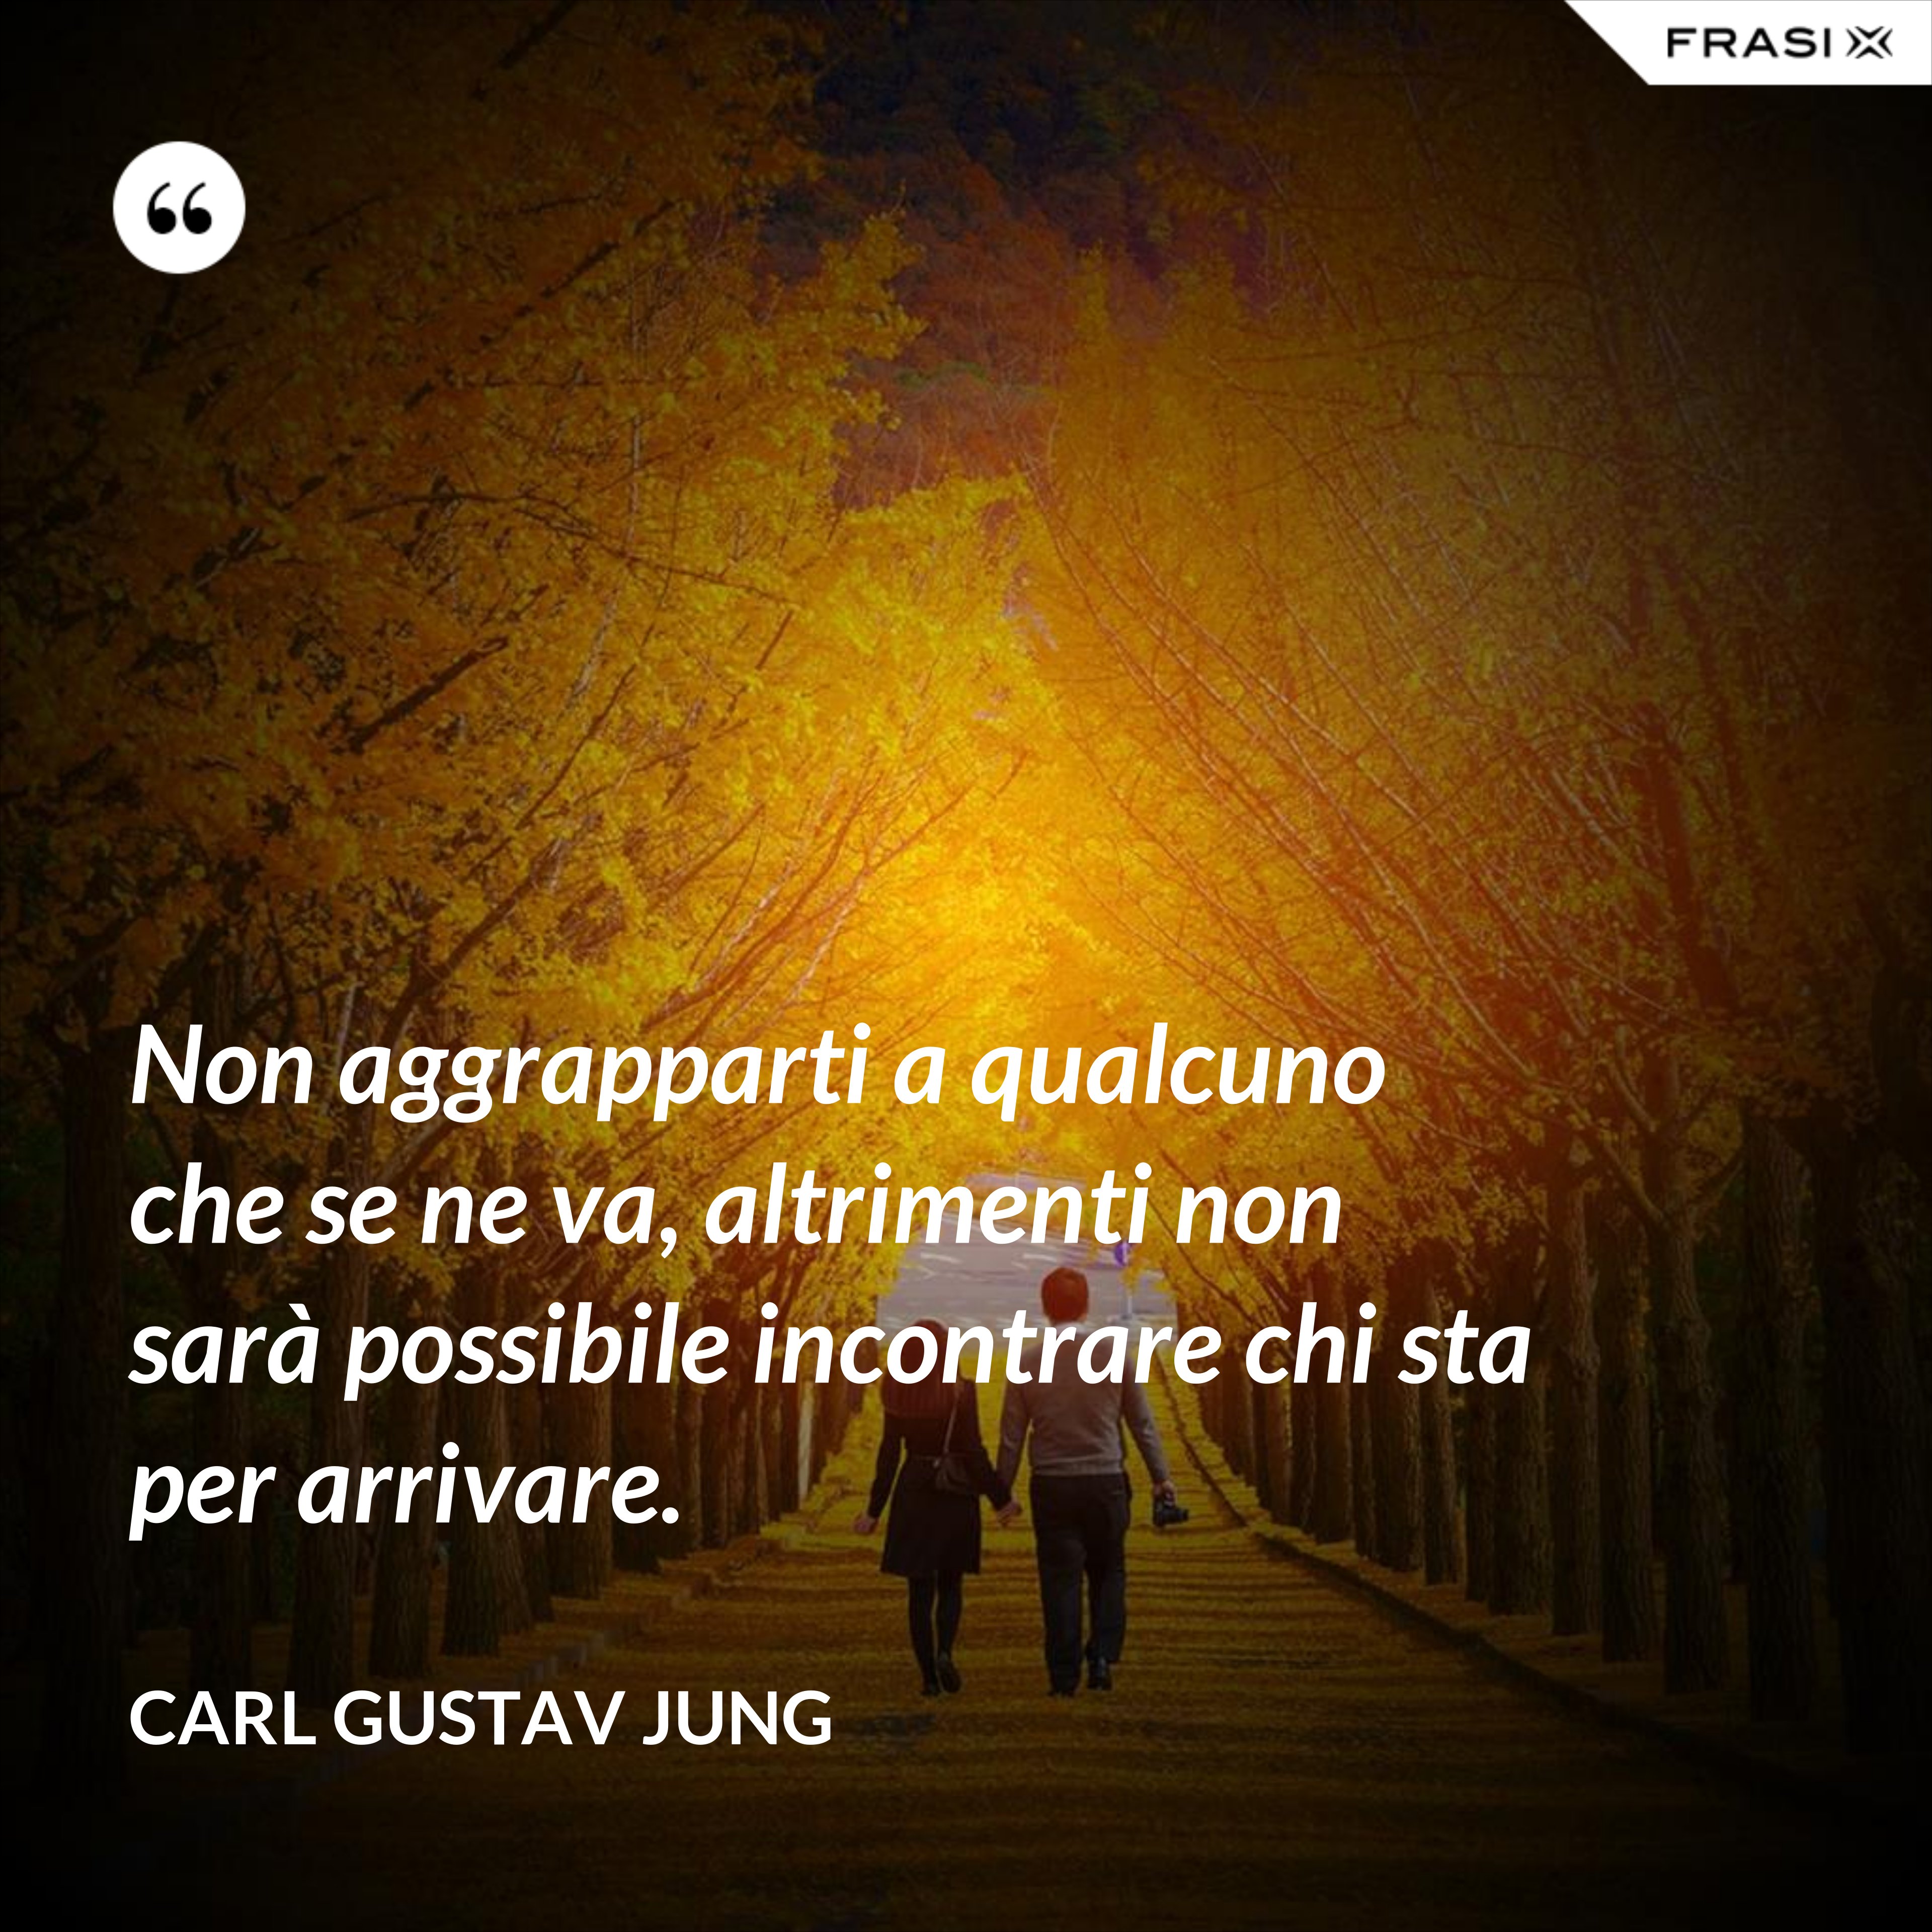 Non aggrapparti a qualcuno che se ne va, altrimenti non sarà possibile incontrare chi sta per arrivare. - Carl Gustav Jung